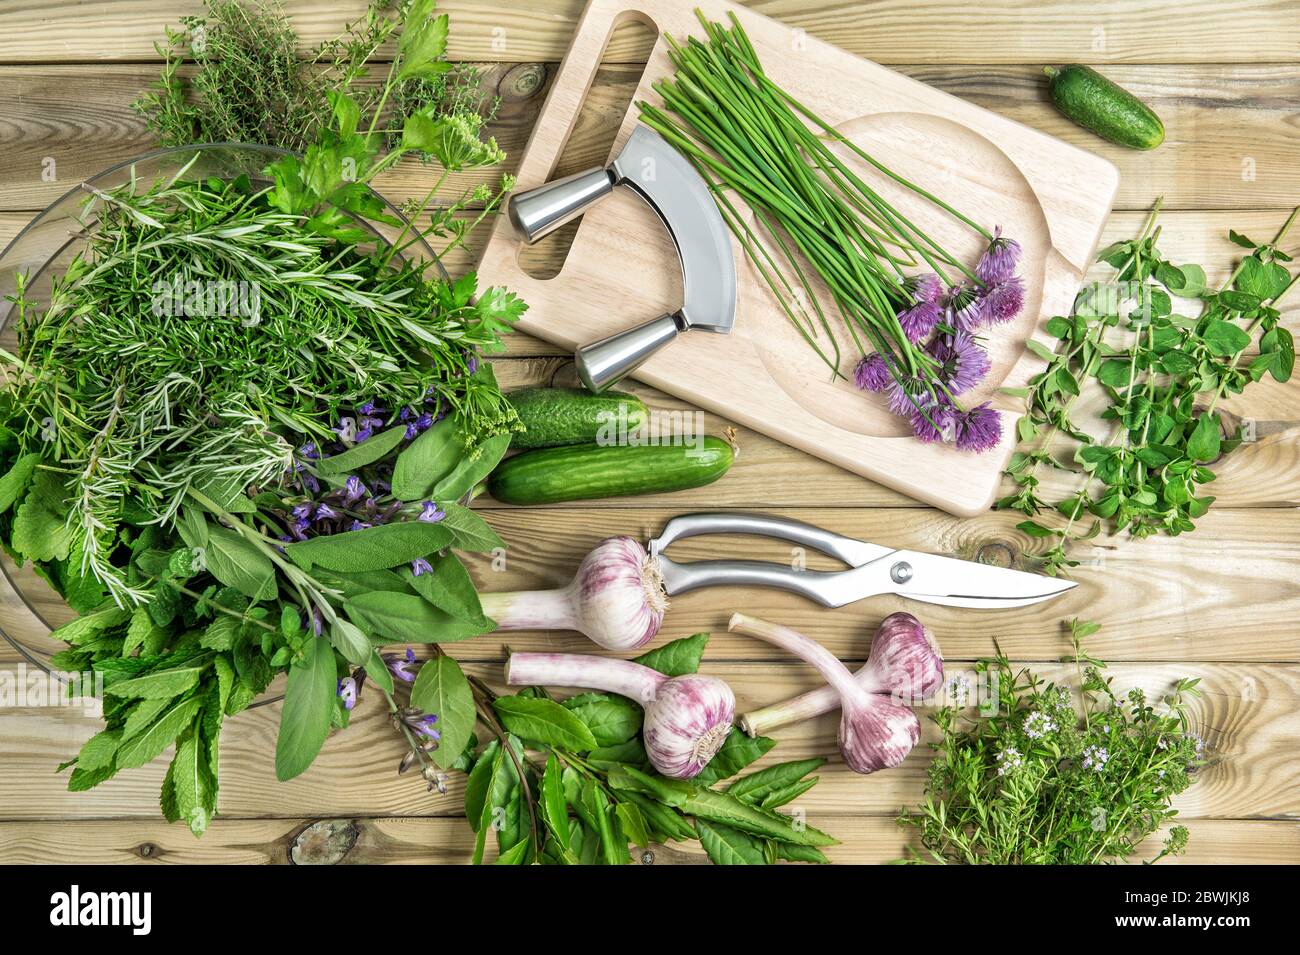 Herbes et légumes frais. La nourriture. Basilic, persil, menthe, thym, ciboulette, ail Banque D'Images